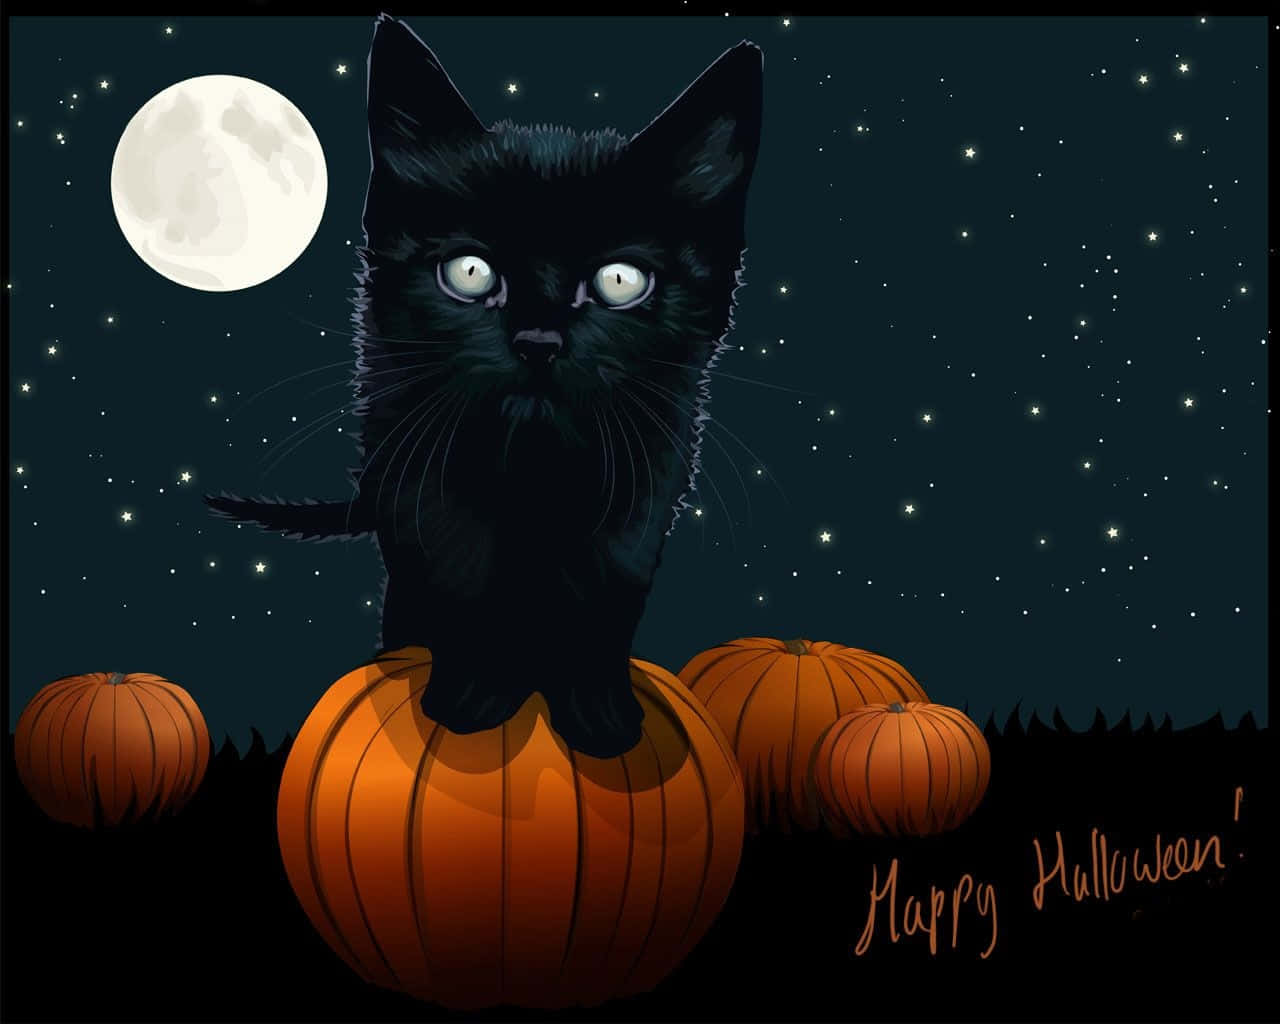 Imagende Un Lindo Gatito Negro En Un Cielo De Luna Llena De Halloween